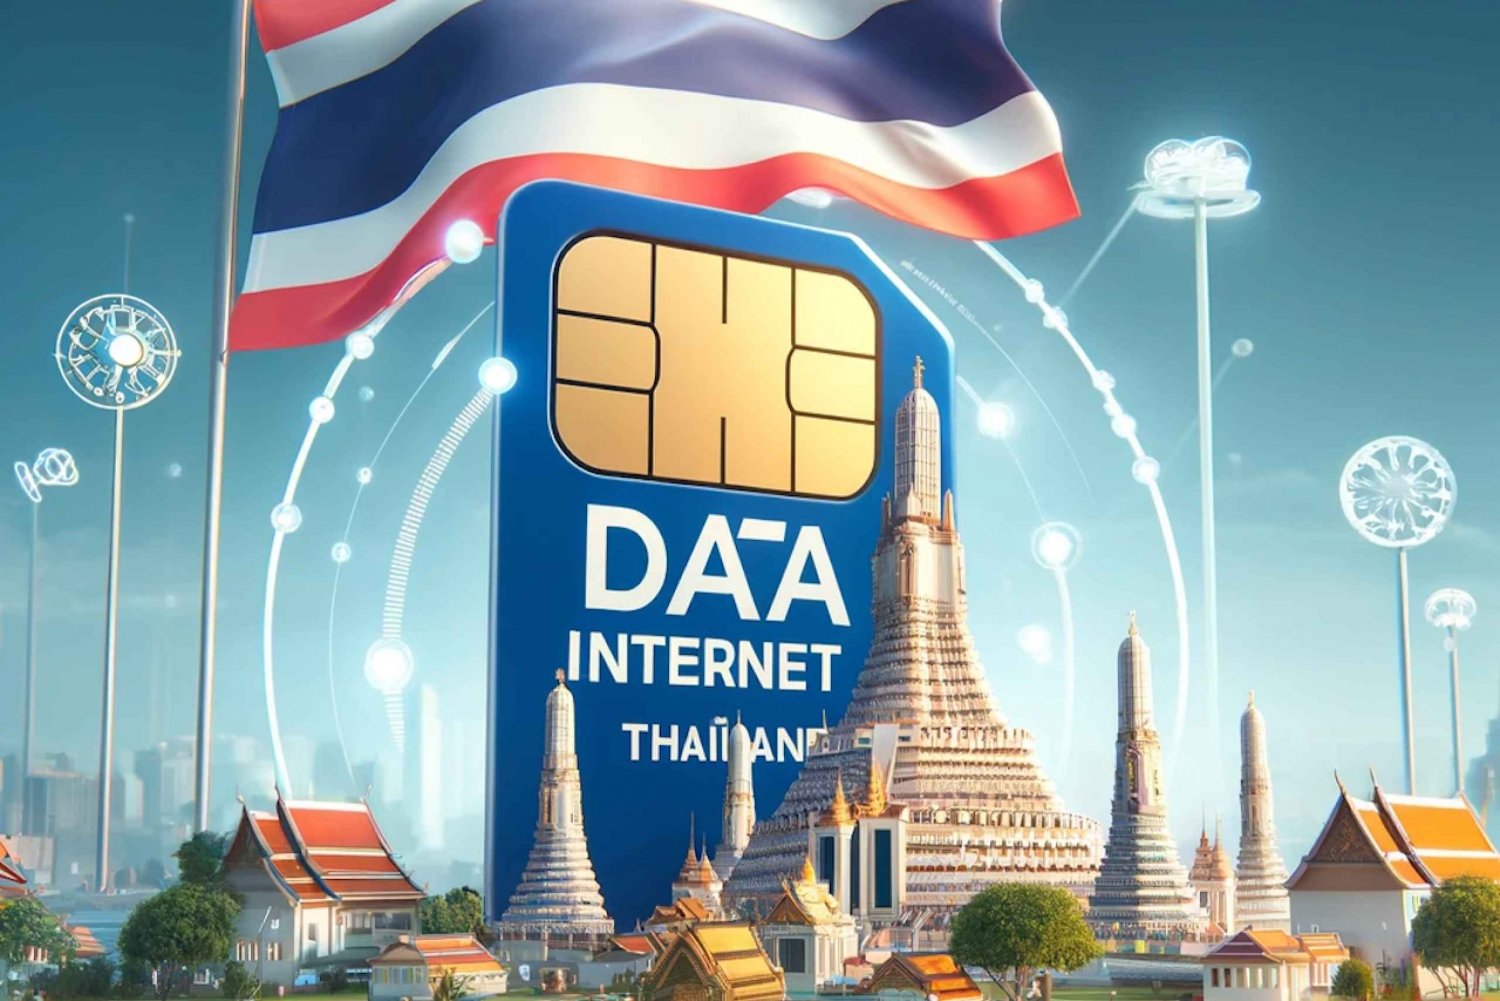 Thailand: eSIM Internet Data Plan for 4G/5G